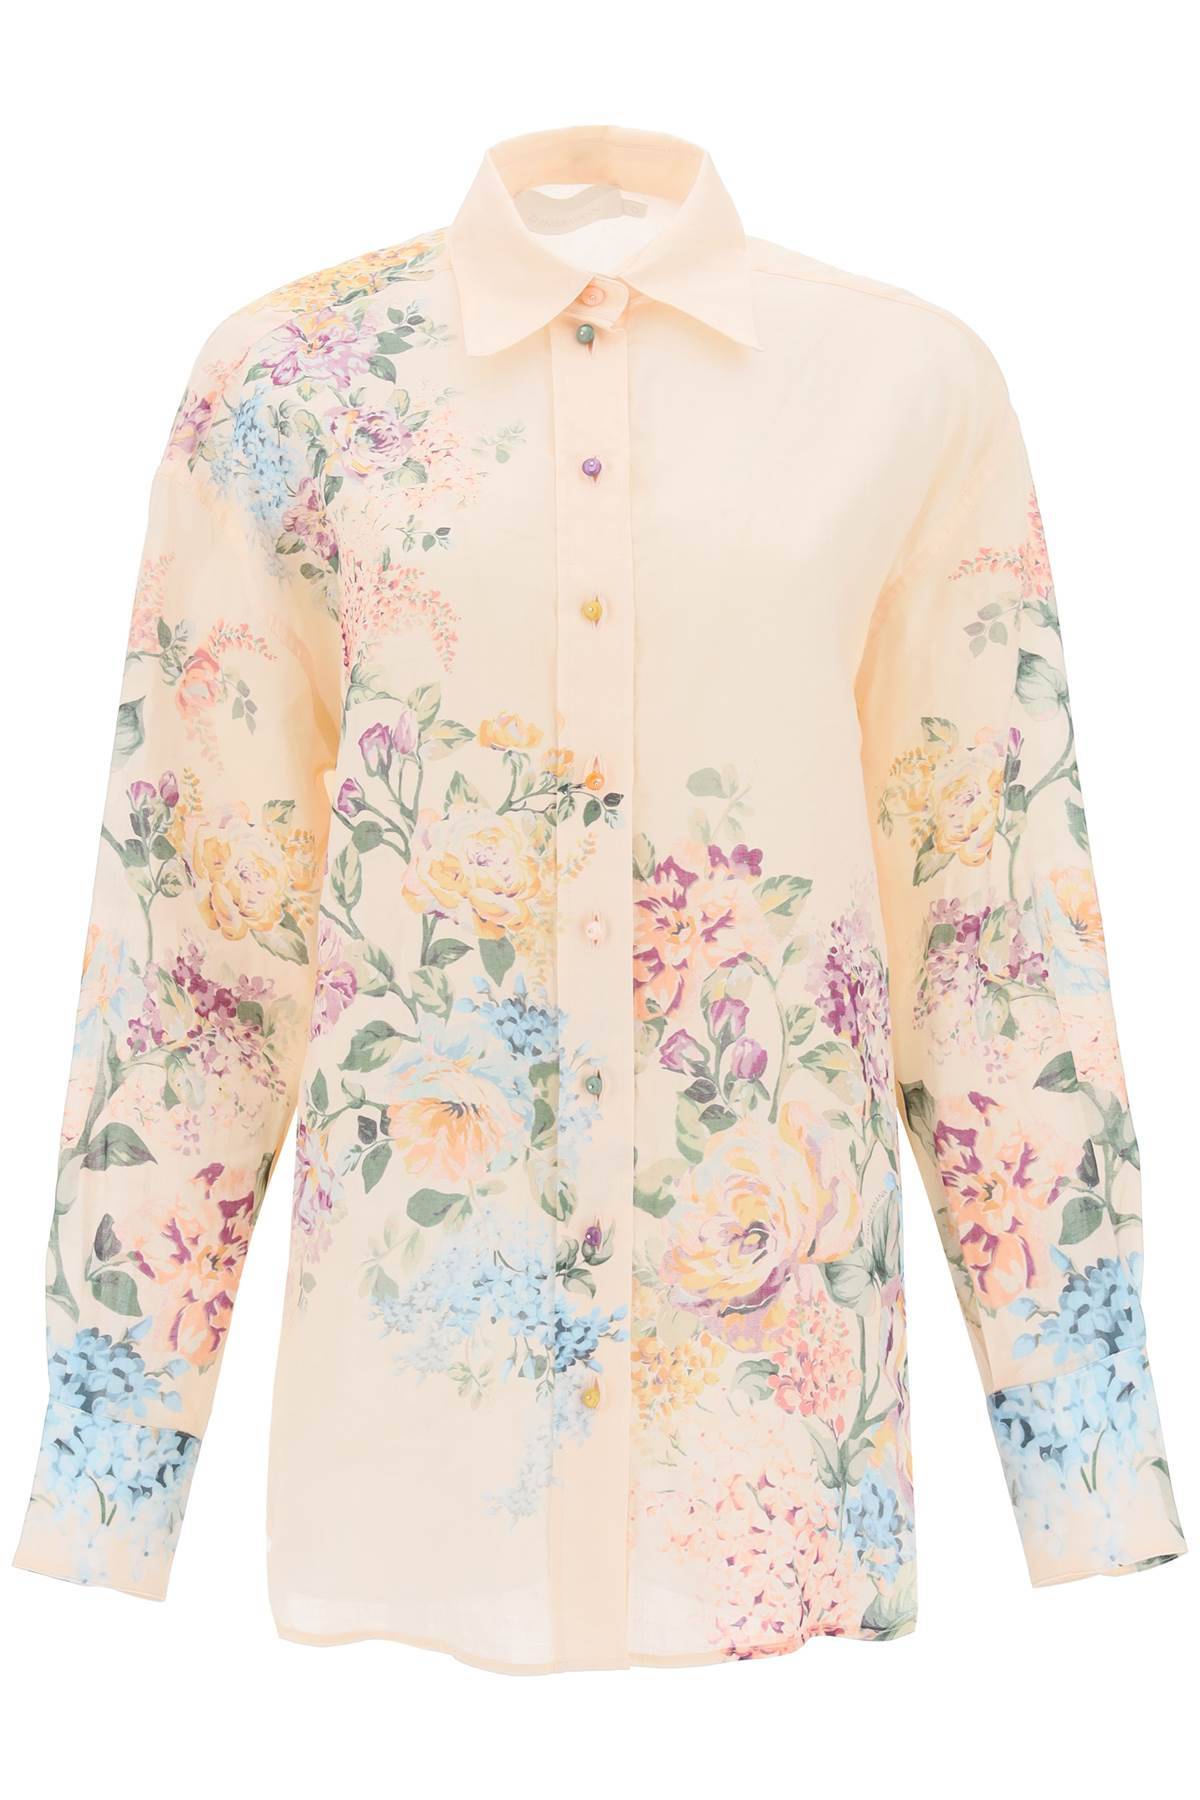 Zimmermann ZIMMERMANN floral halliday shirt